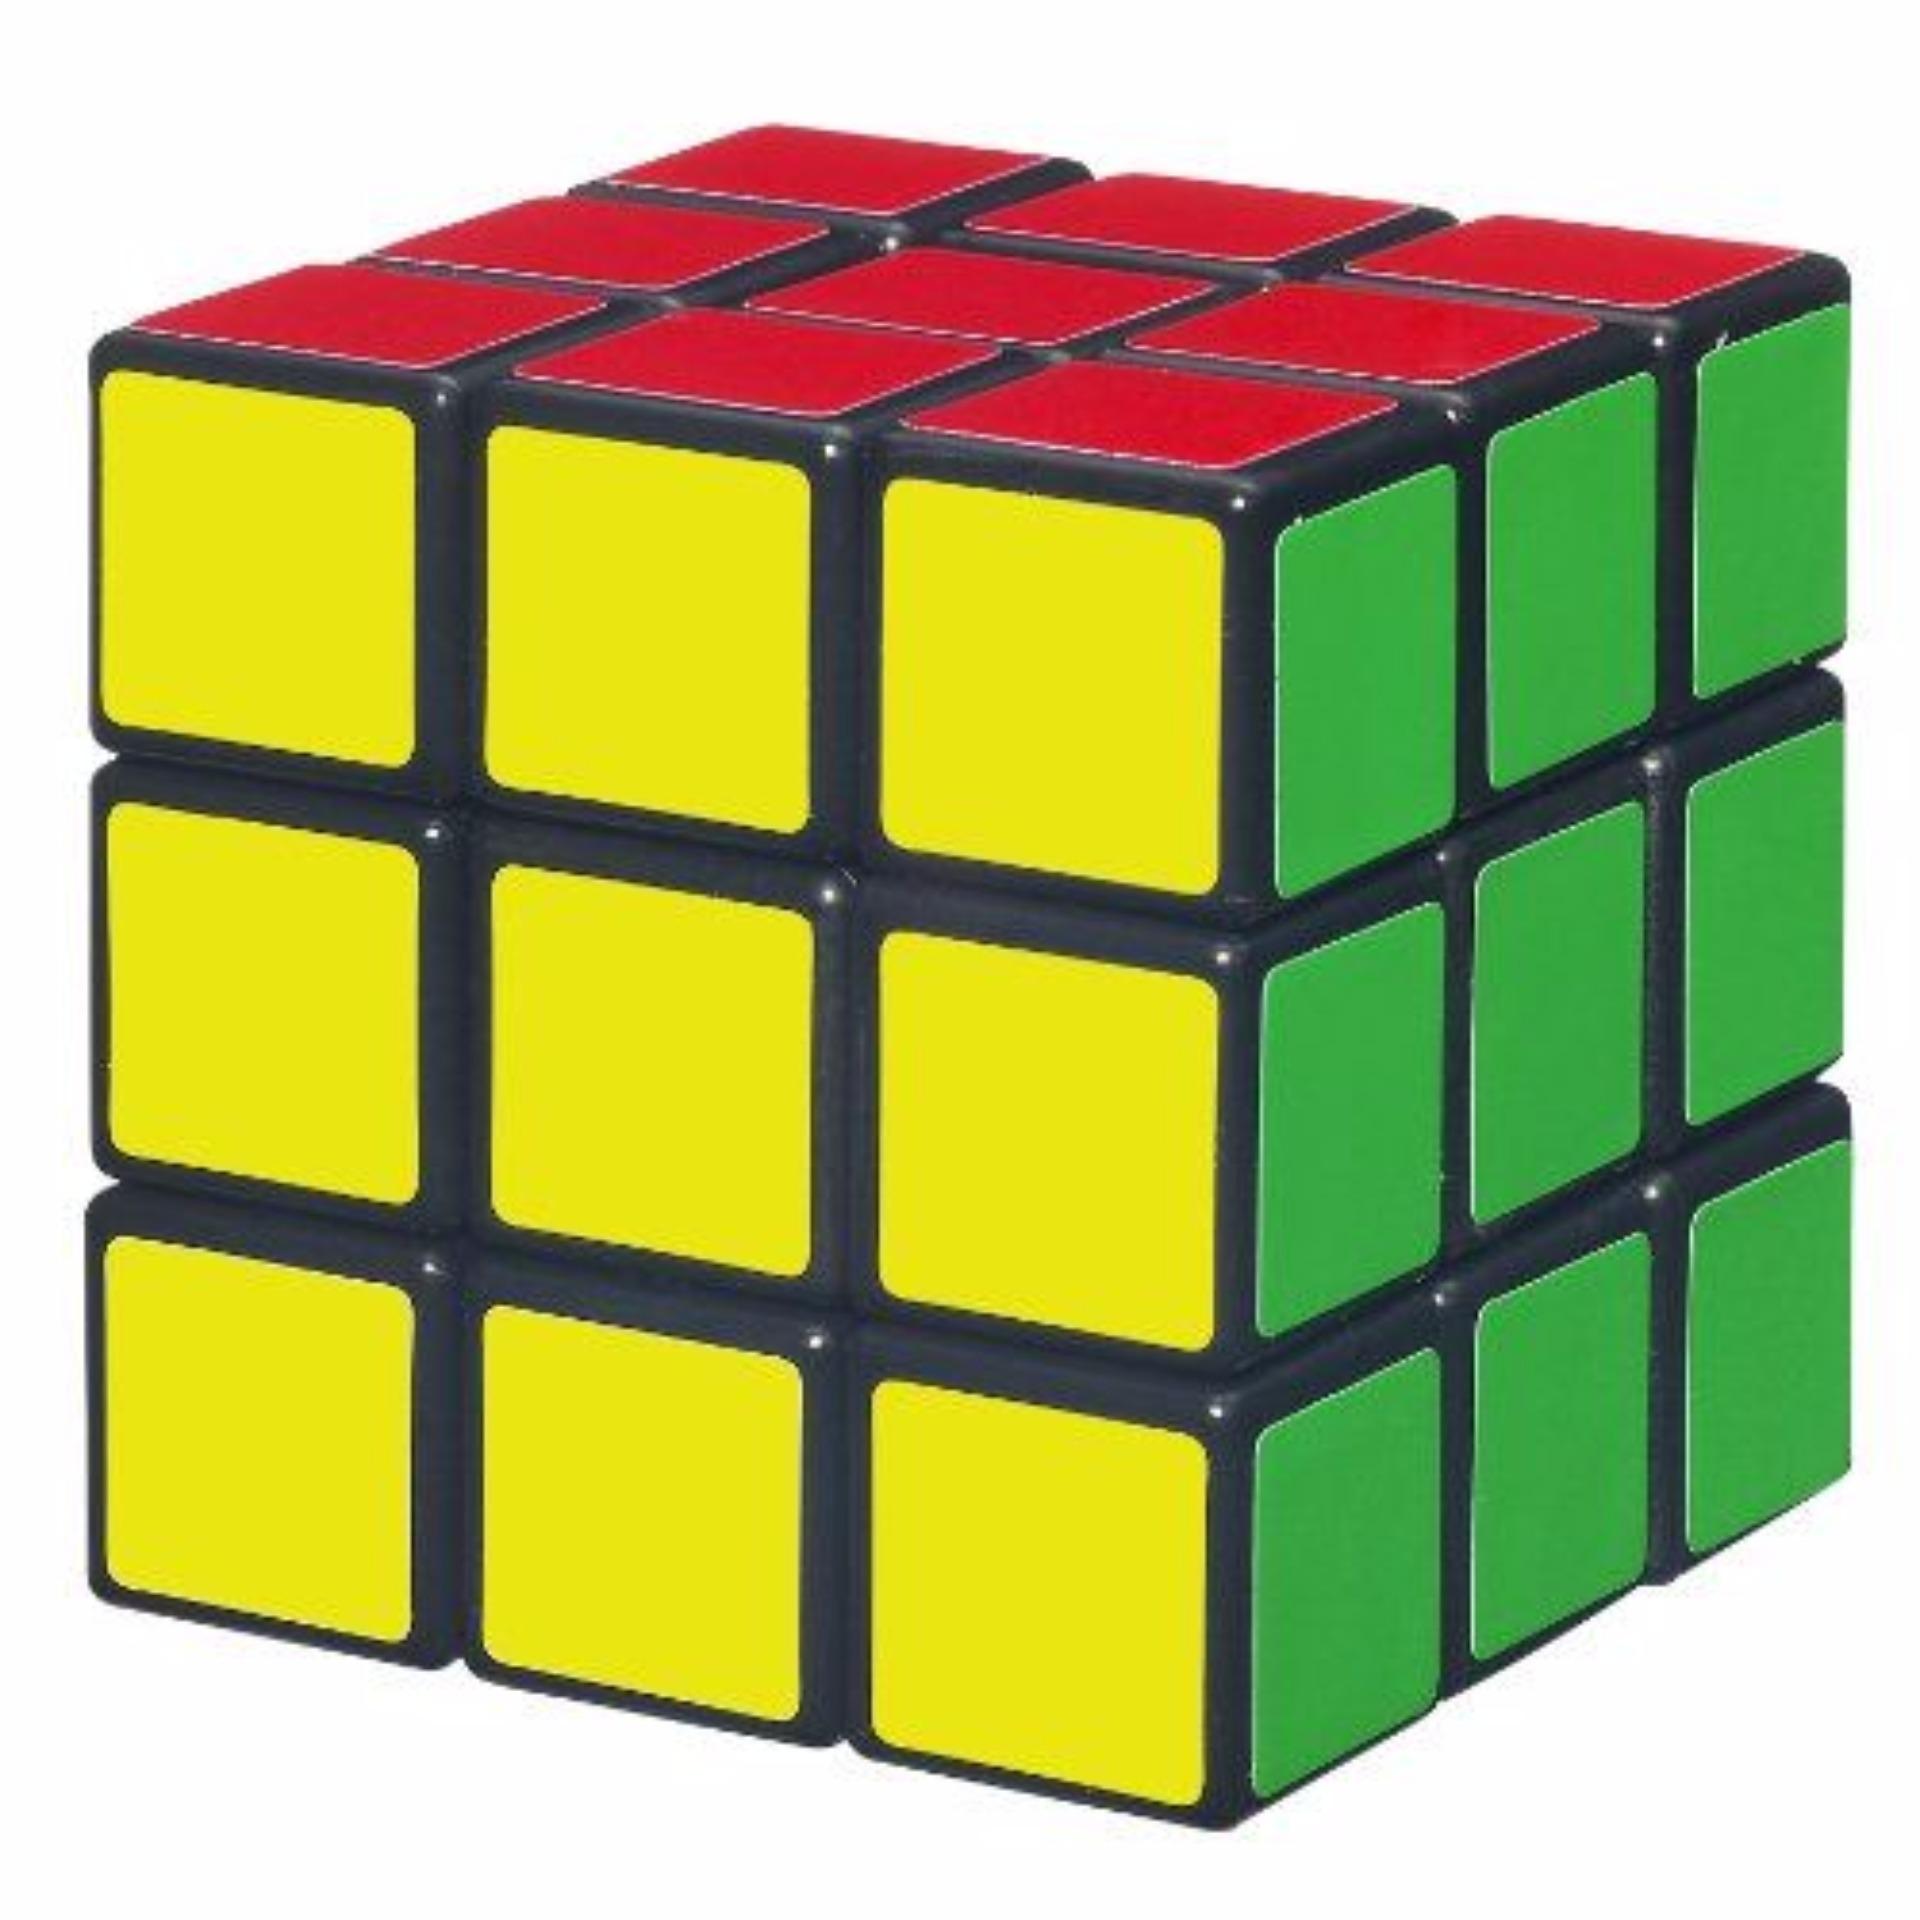 Ảnh Rubik 3x3 mới nhất: Các nhà chuyên gia Rubik liên tục nghiên cứu và tạo ra những giải pháp mới để giải Rubik. Hãy cùng xem những hình ảnh Rubik 3x3 mới nhất để bắt kịp xu hướng và cải thiện kỹ năng của mình!